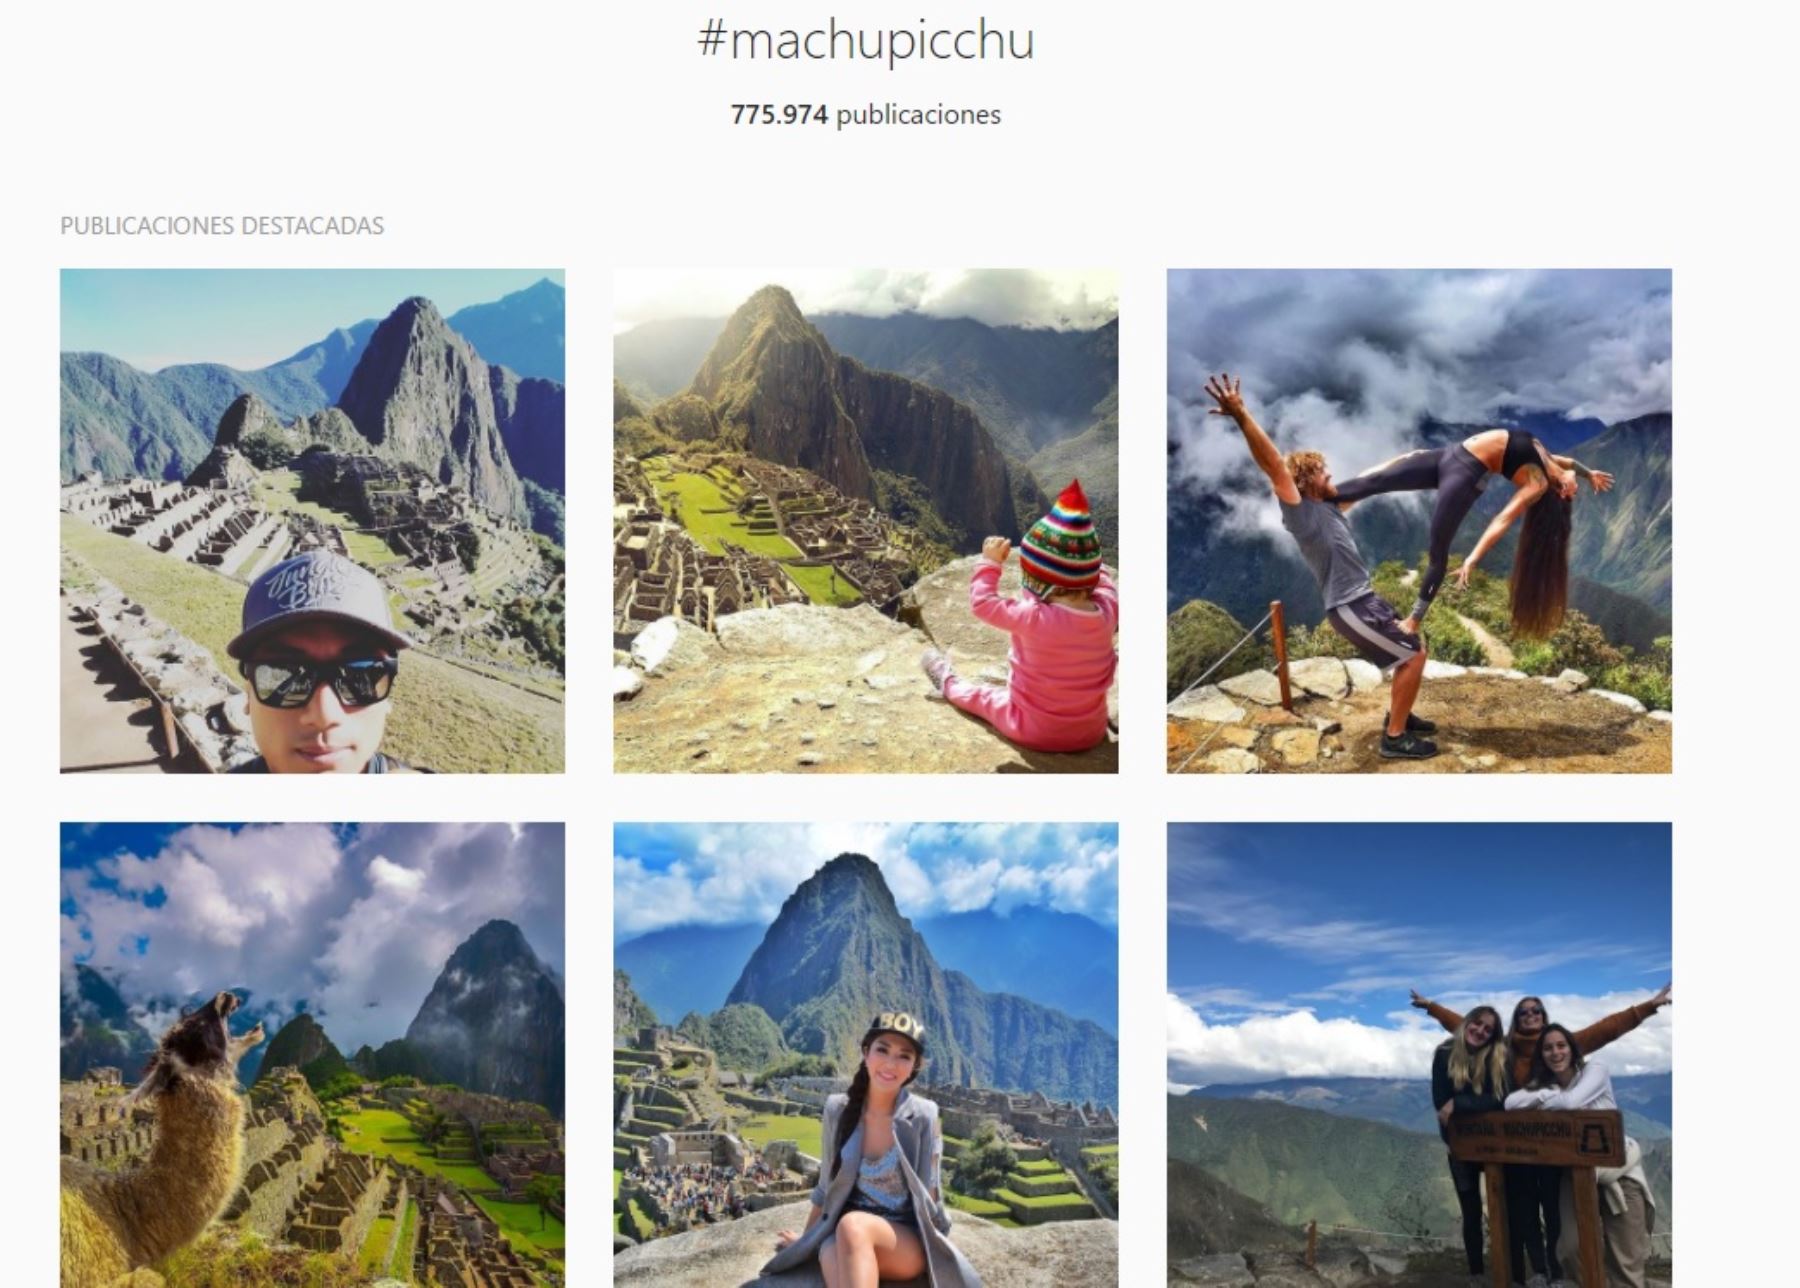 Machu Picchu, el principal destino turístico del Perú y una de las siete nuevas maravillas del mundo moderno, es el lugar más fotografiado de Sudamérica, reveló un reciente estudio realizado por la empresa de telefonía celular Sony Mobile en base a información de la red social Instagram.